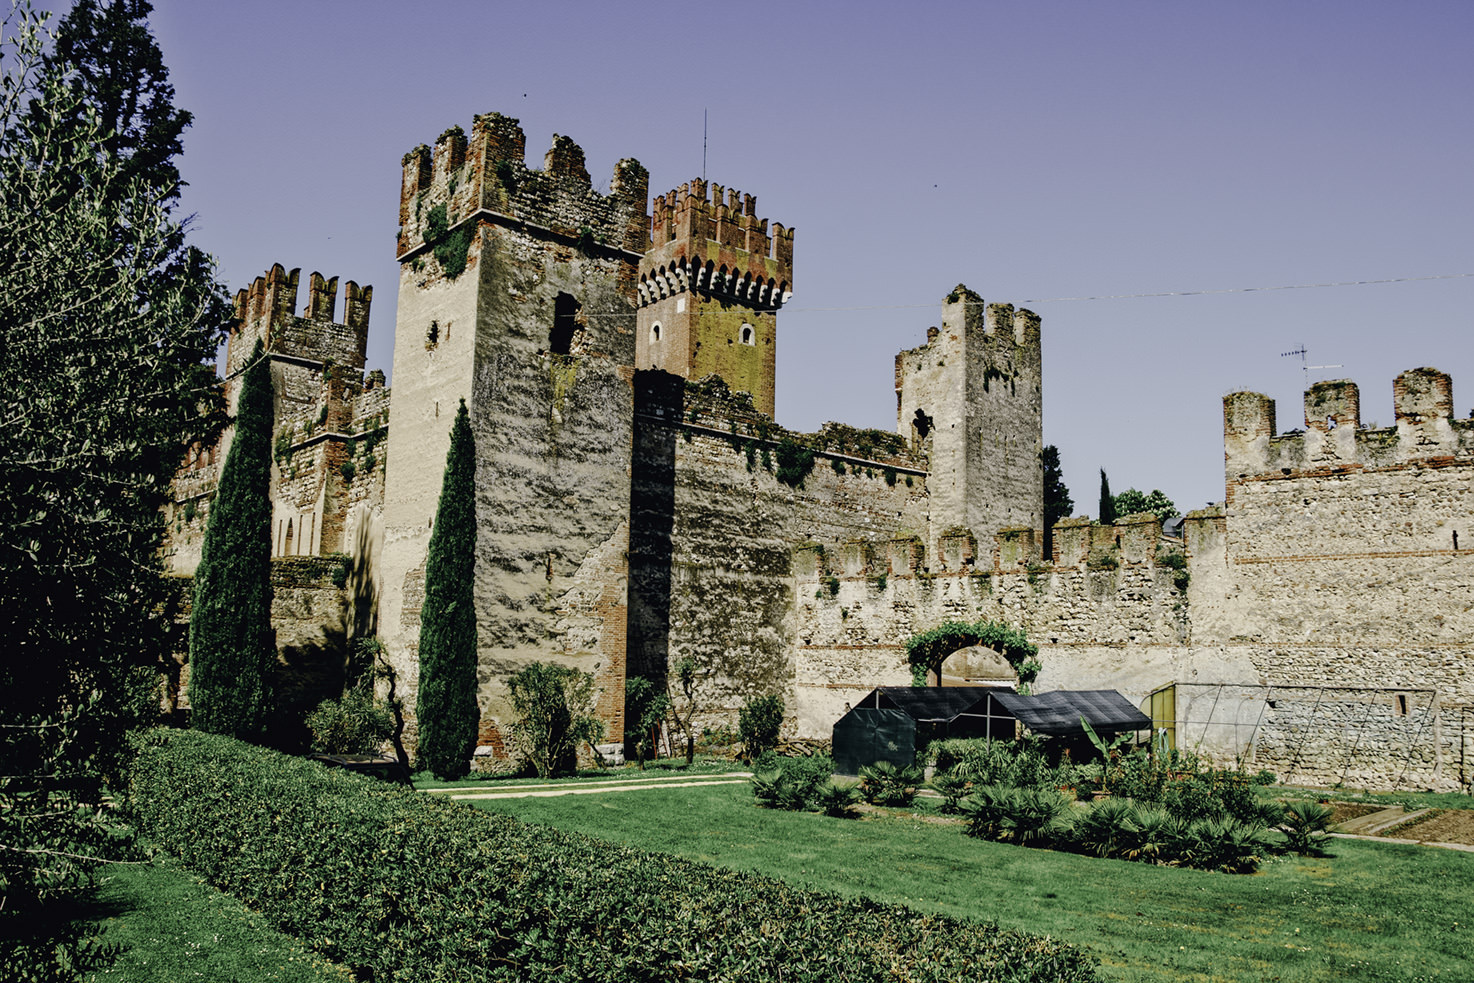 Castle of Torri del Benaco, Lake Garda